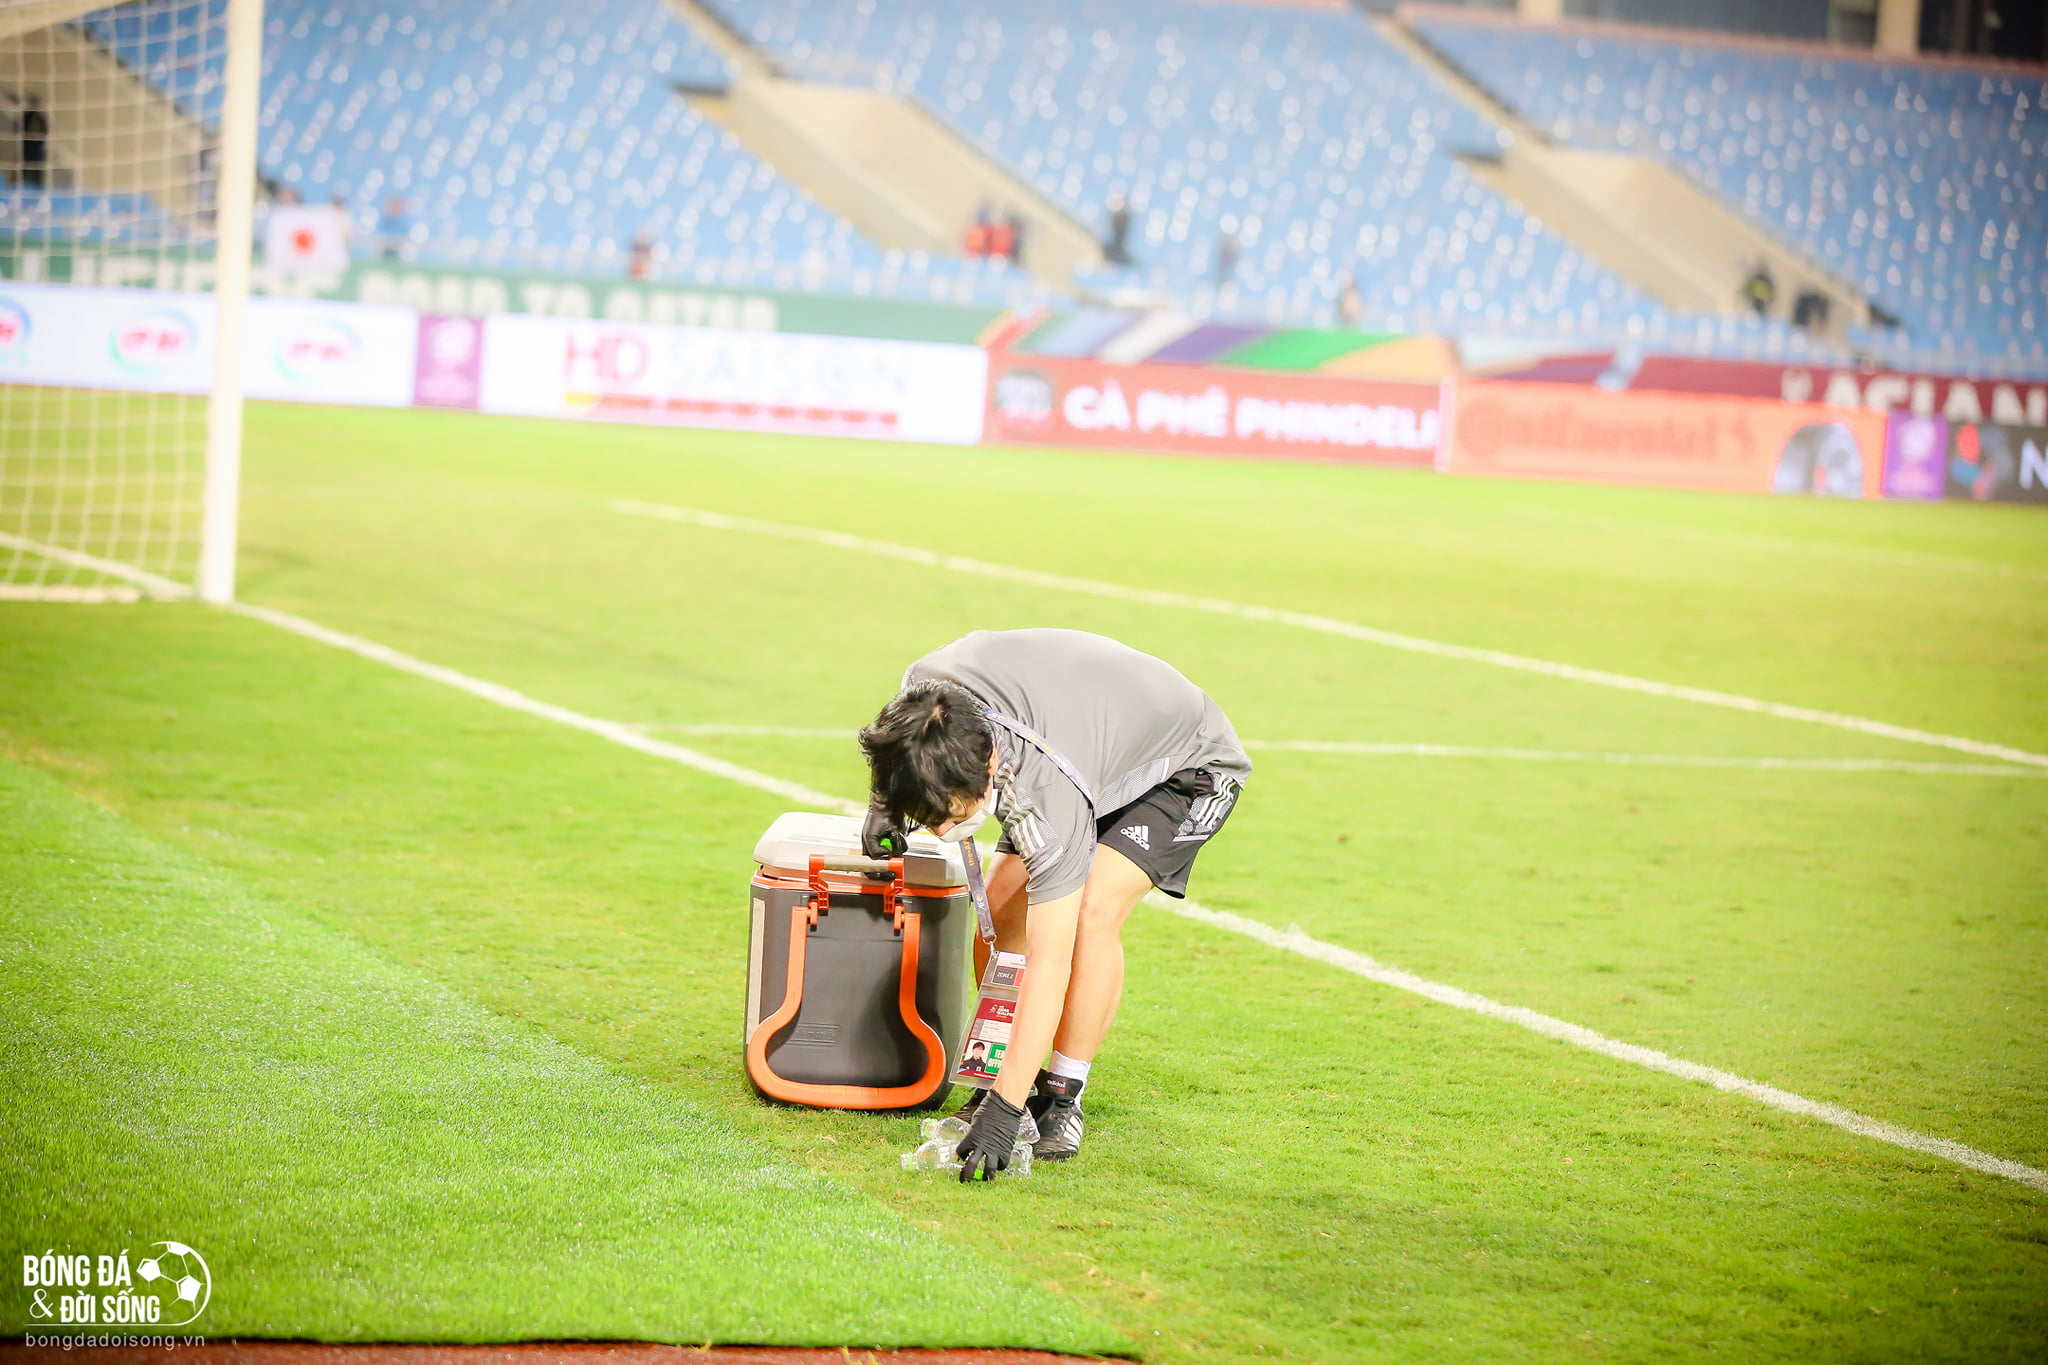 Hành động đẹp: Một thành viên của ĐT Nhật Bản đã đi quanh sân cỏ nhặt hết chai nước mà hai đội bỏ sót sau trận đấu - ảnh 6